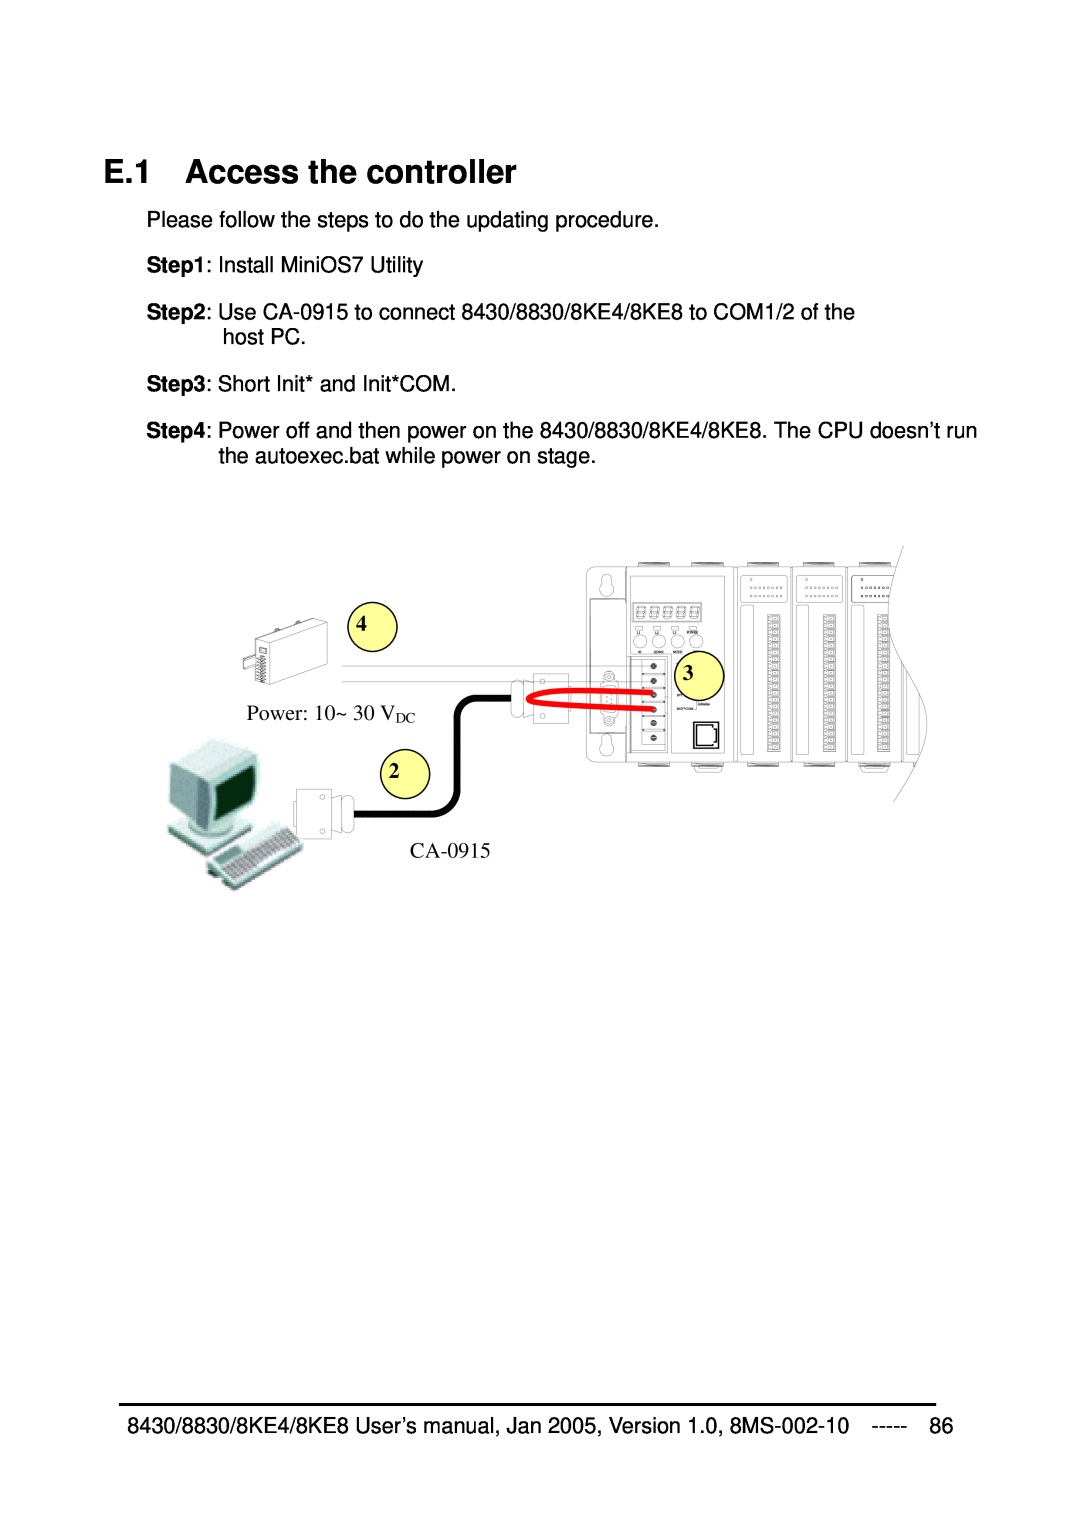 ICP DAS USA 8430, 8KE8, 8KE4, 8830 user manual E.1 Access the controller, Power 10~ 30 VDC, CA-0915 